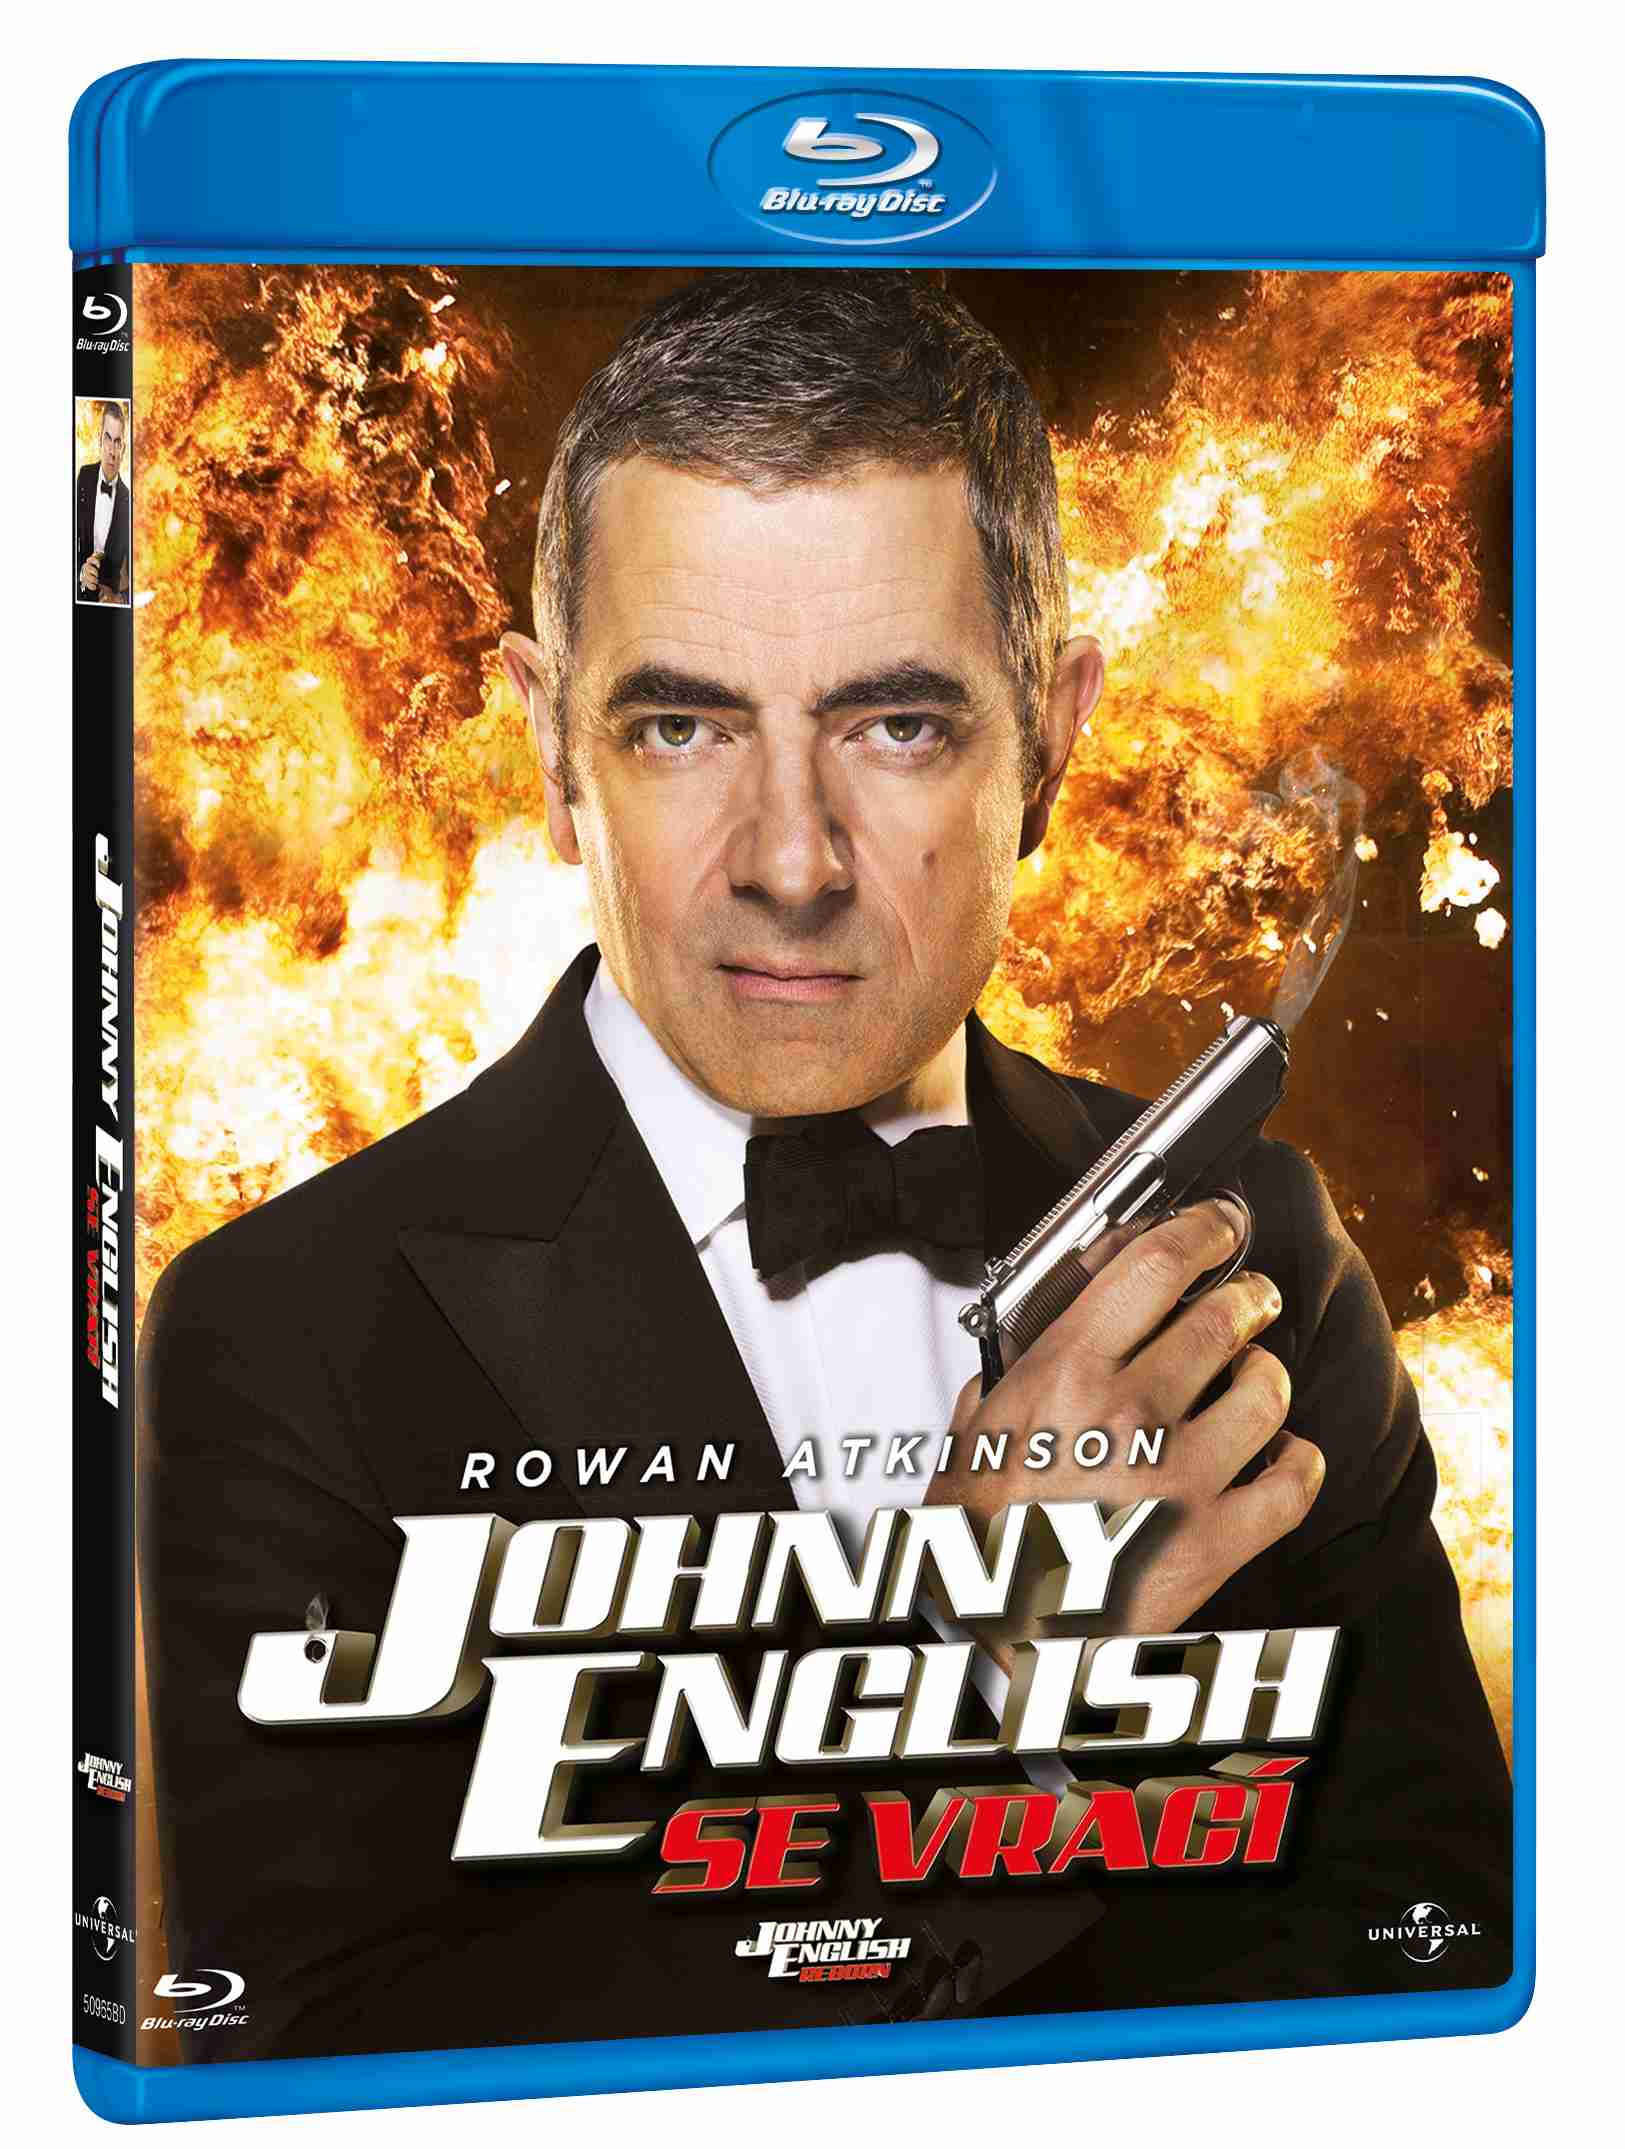 Джонни инглиш отзывы. Агент Джонни Инглиш Blu ray. Агент Джонни Инглиш перезагрузка. Агент Джонни Инглиш перезагрузка Blu-ray. Агент Джонни Инглиш: перезагрузка (2011).